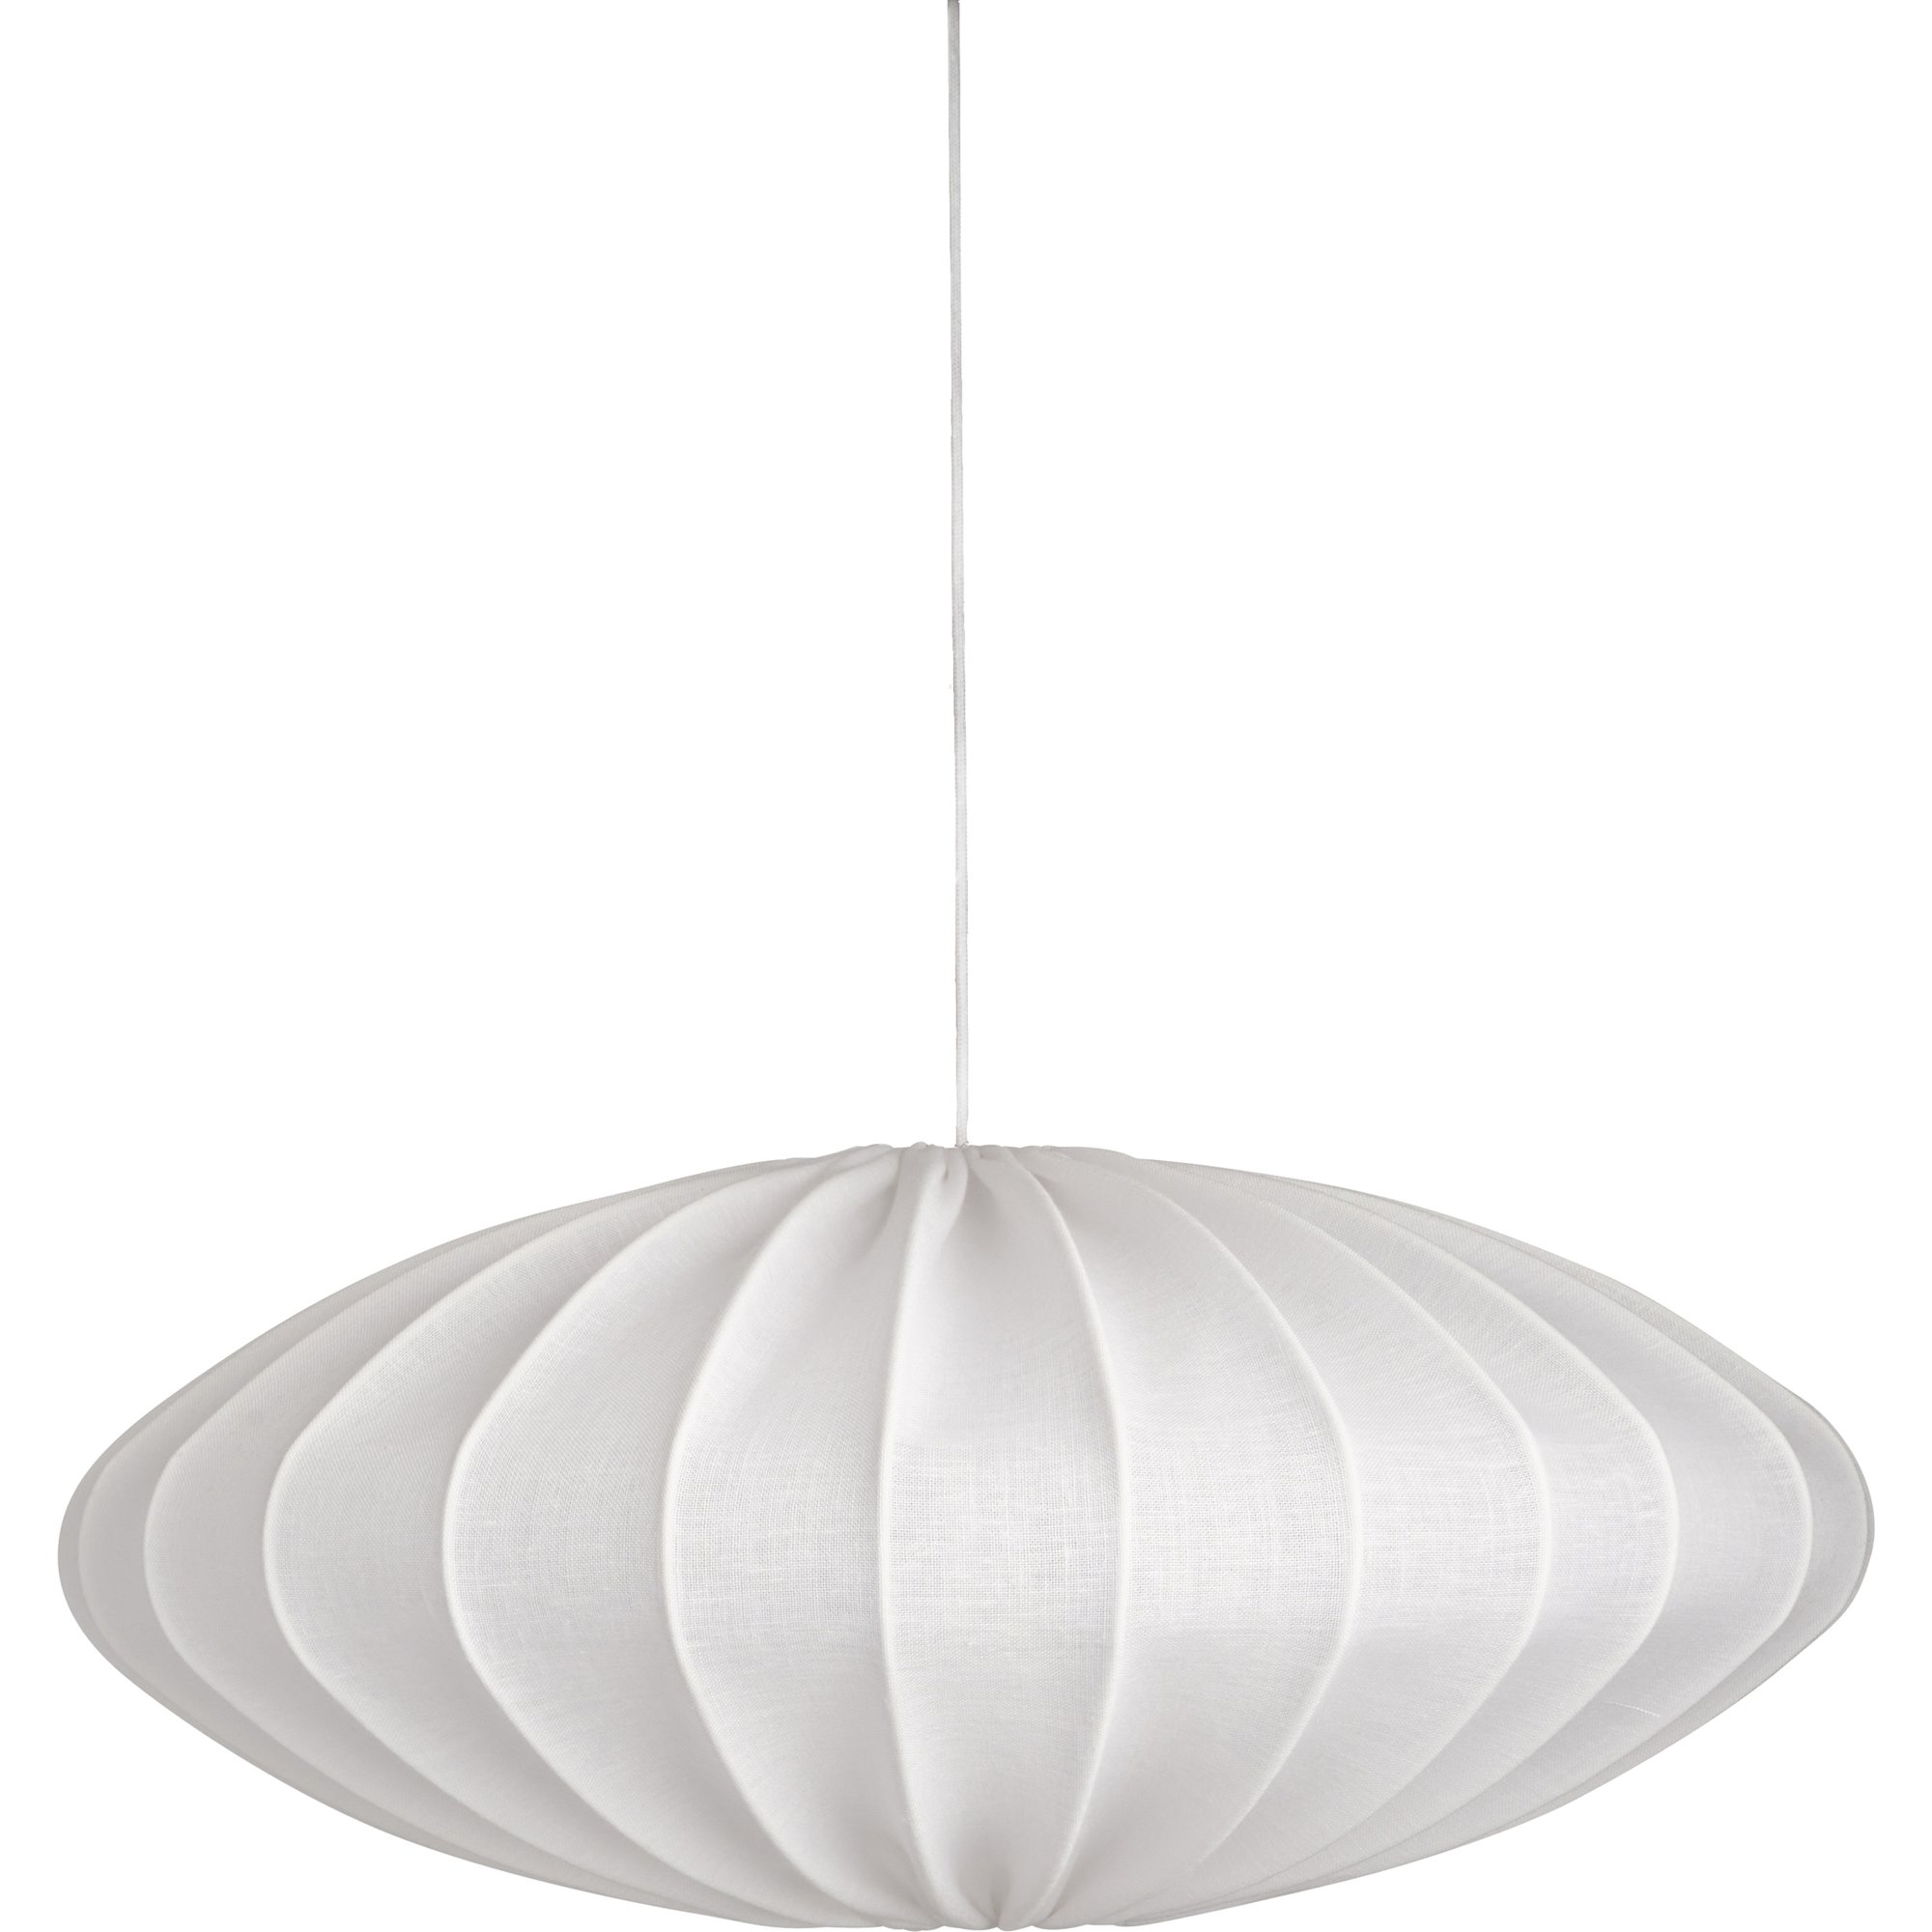 Produktfoto för Watt & Veke Ellipse taklampa, 65 cm, linne, vit